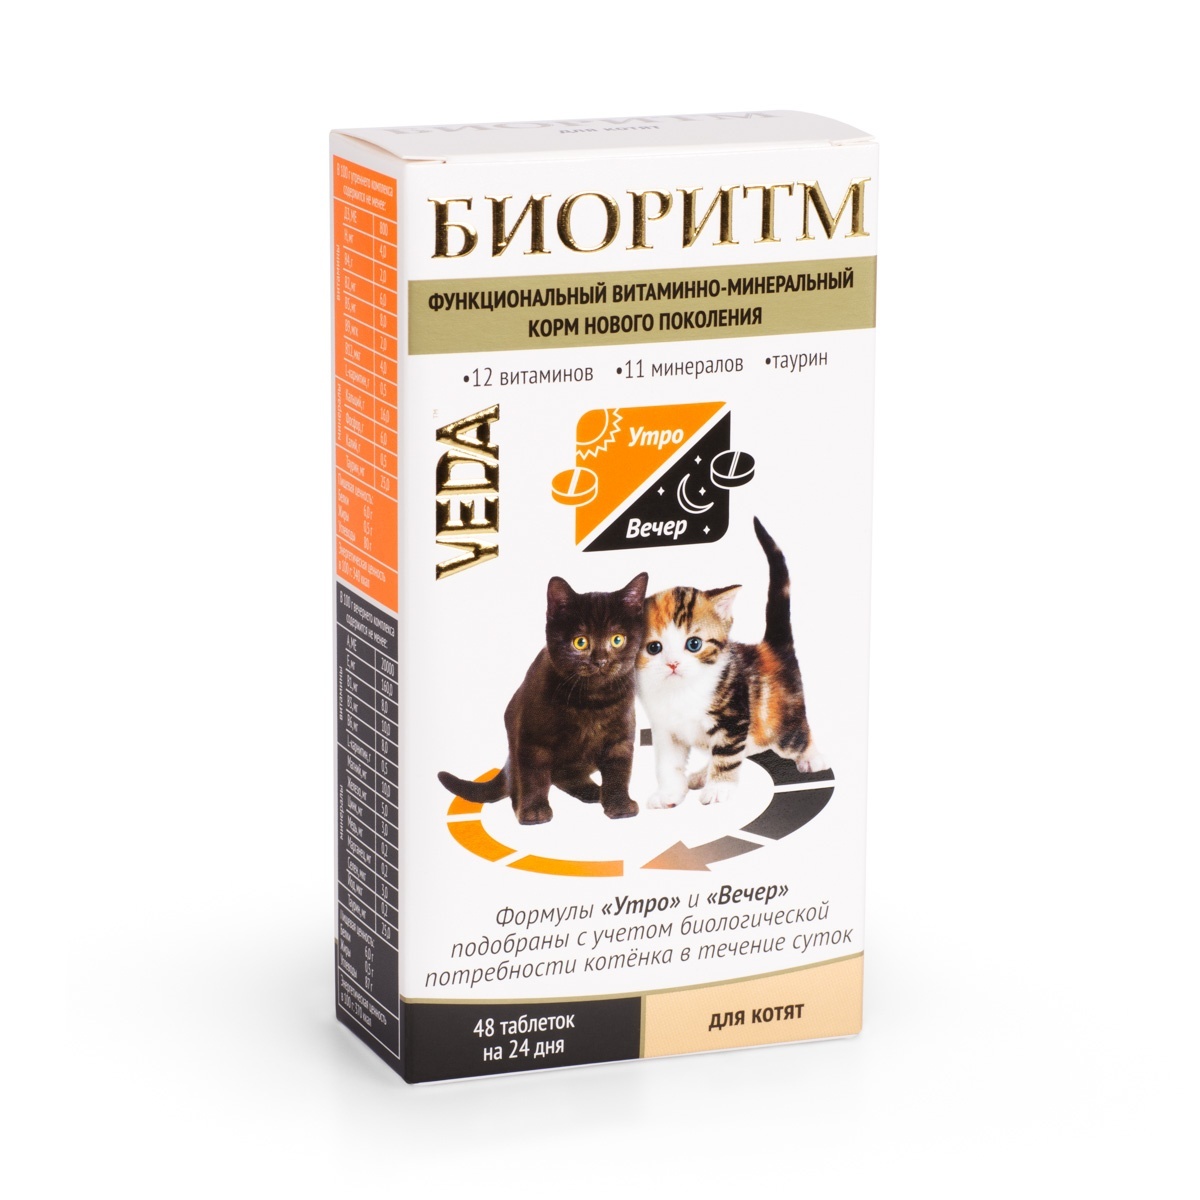 веда веда лактоферон пробиотик для улучшения обмена веществ 20 таб 10 г Веда Веда биоритм витамины для котят (20 г)